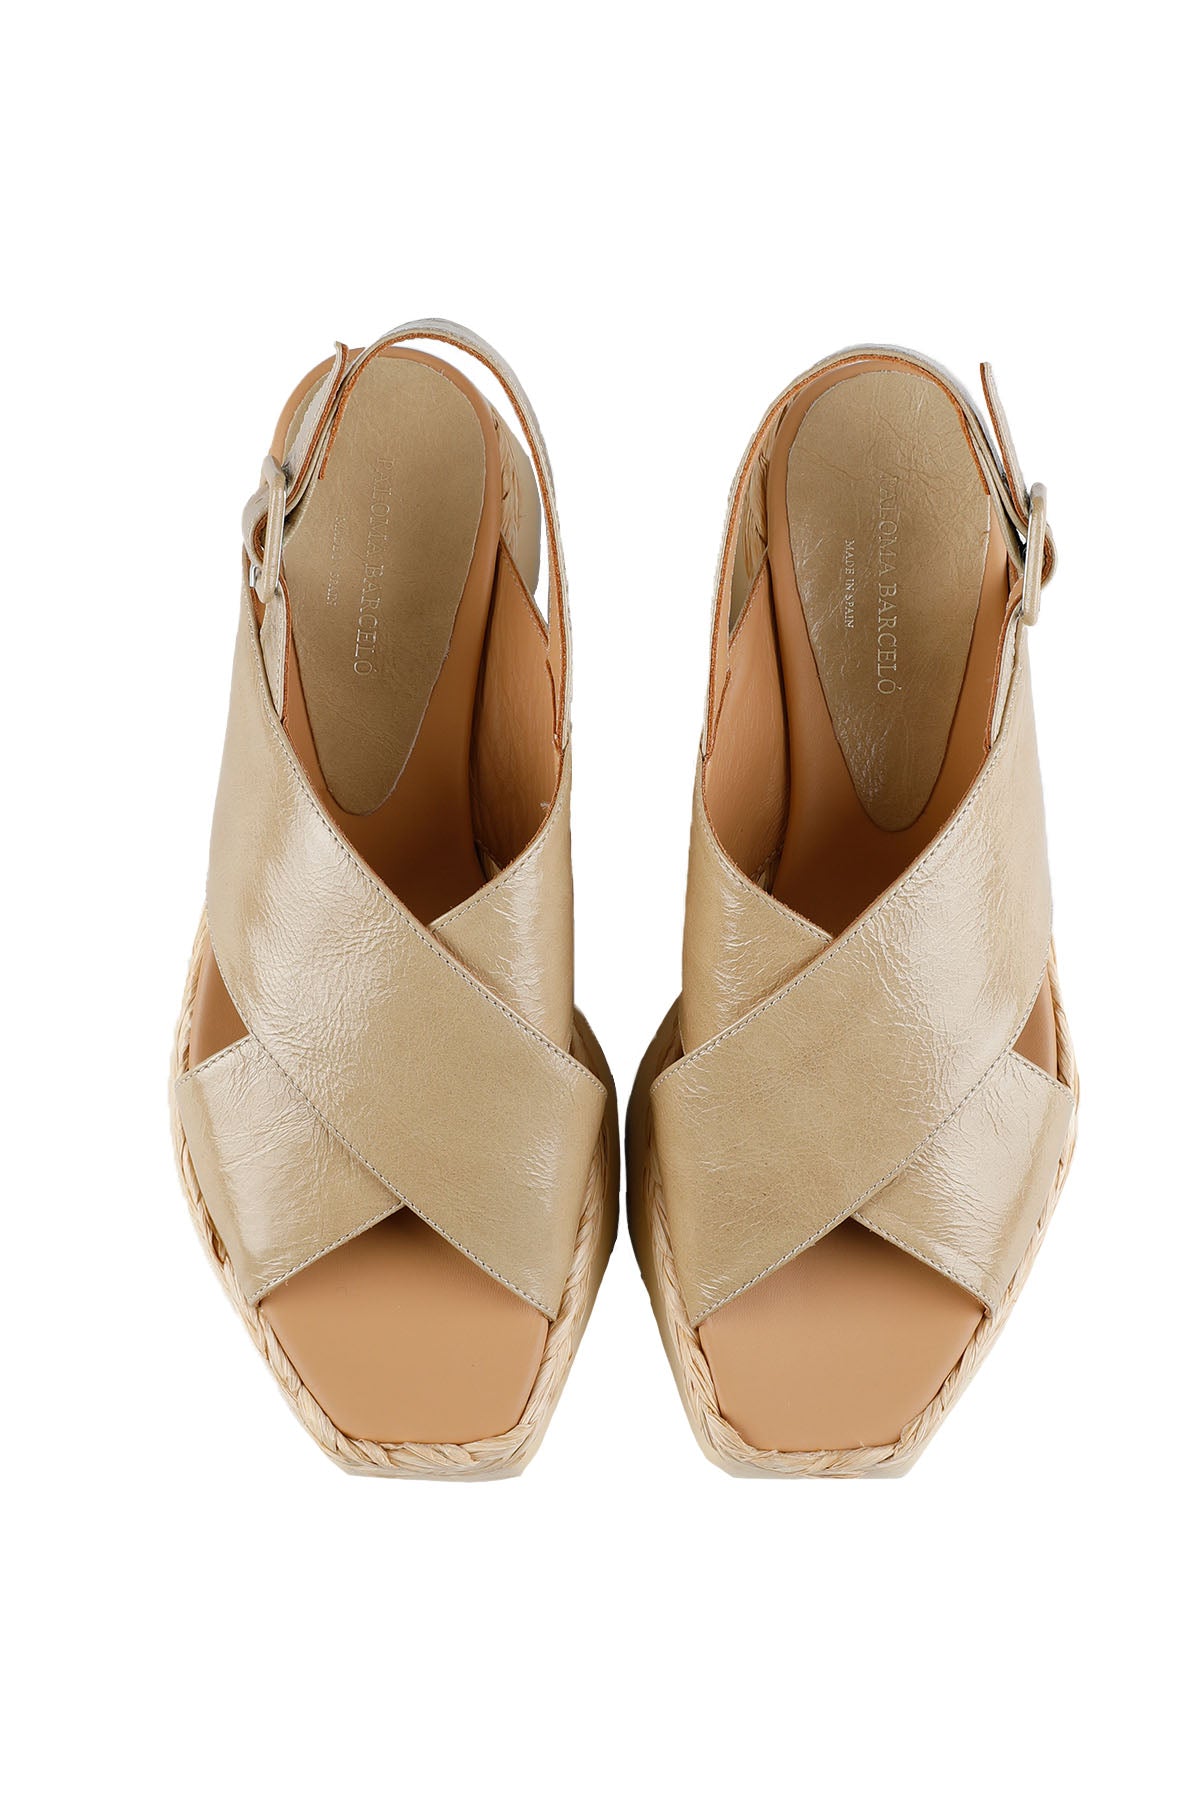 Paloma Barcelo Çapraz Bantlı Deri Sandalet-Libas Trendy Fashion Store